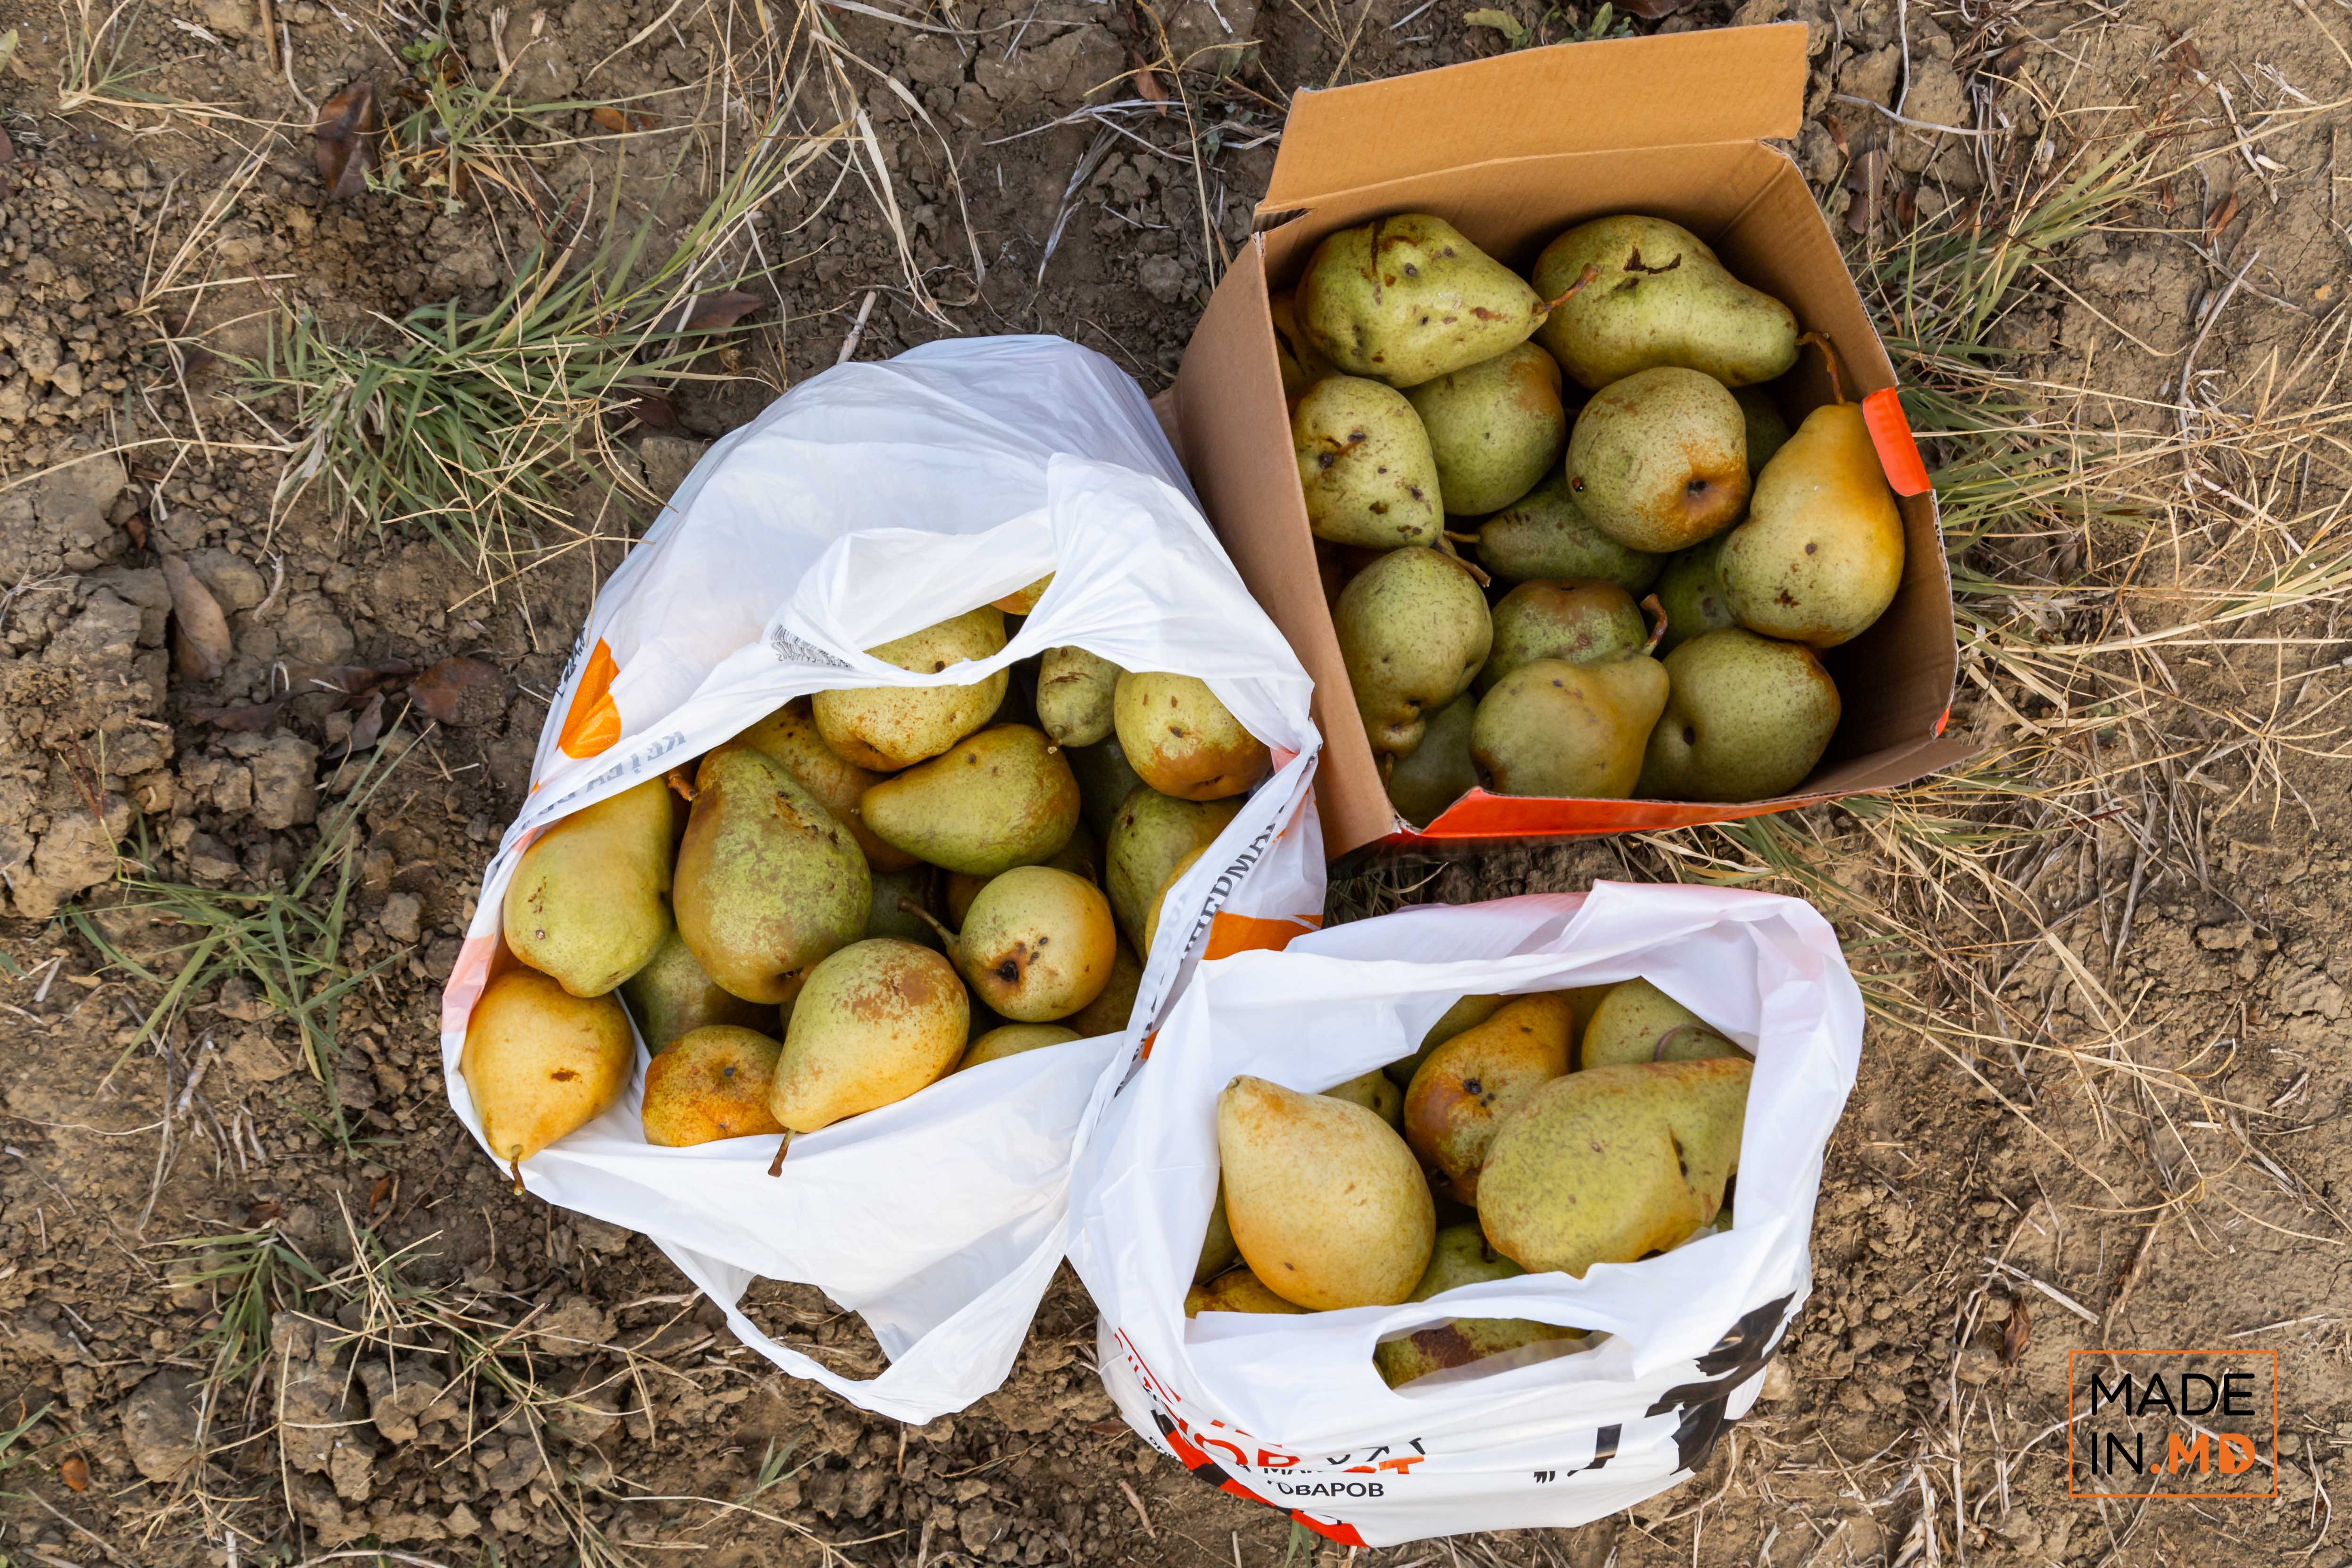 Как выращиваются груши в Молдове. В роще Михая Горгоса из Бэчой